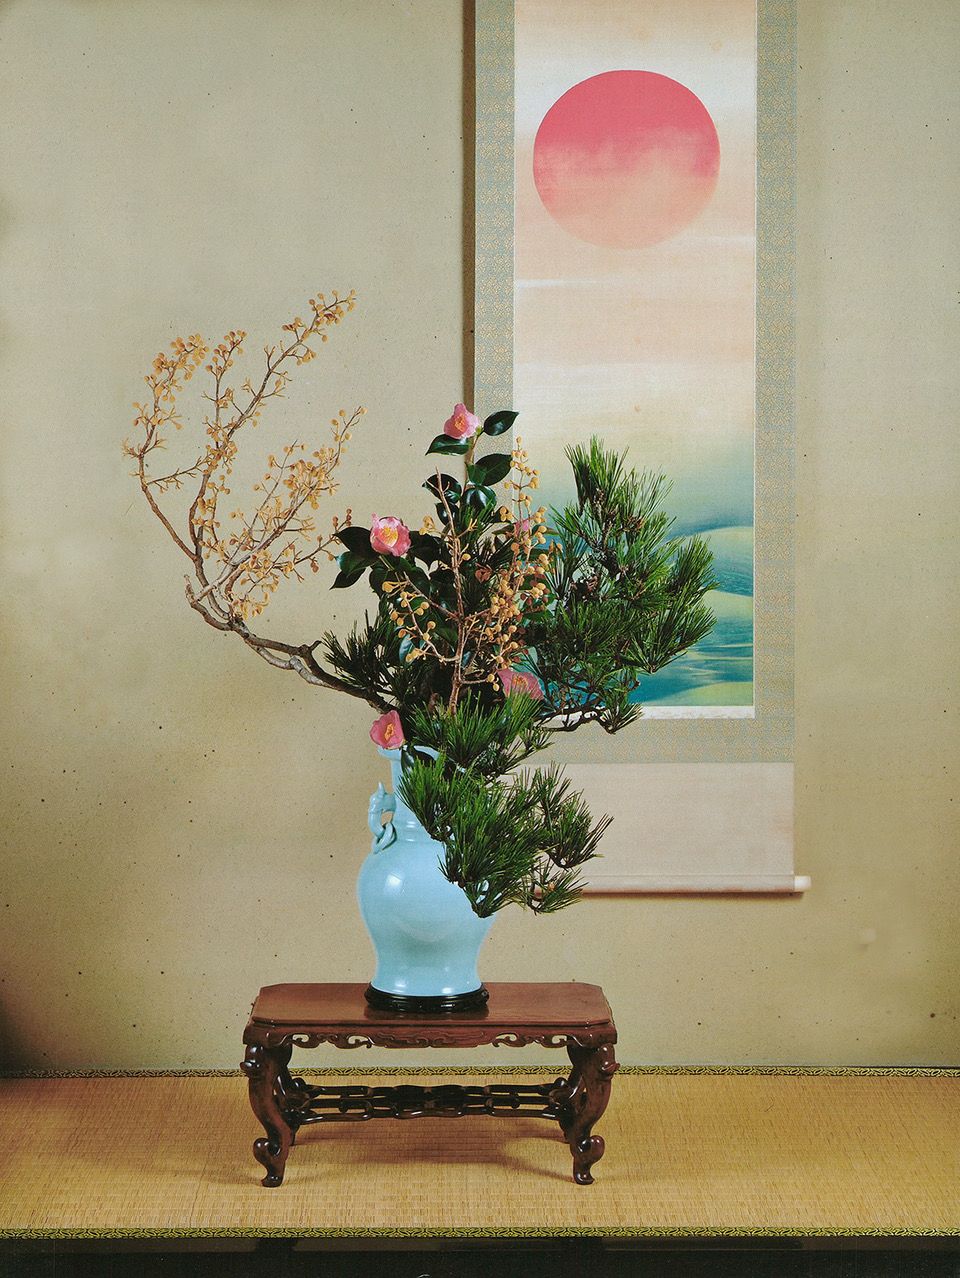 1月のいけばな 「小原豊雲、慶春の祝い花」【生け花、いけばな、生花